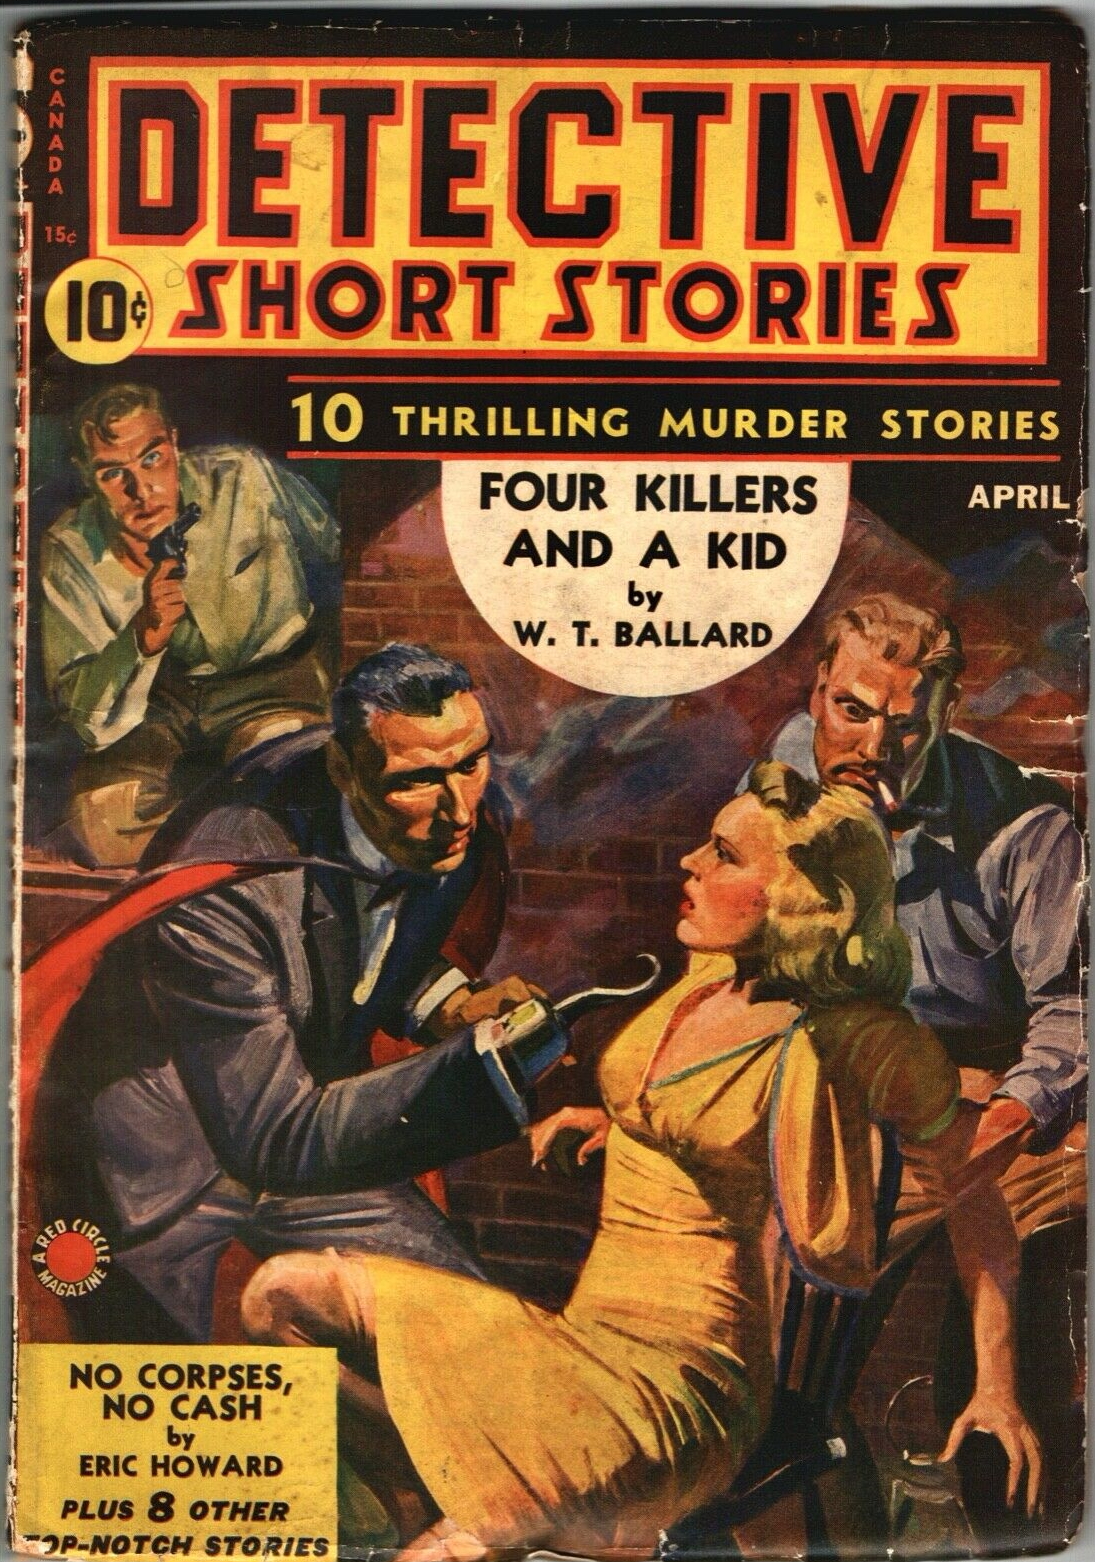 Detective Short Stories - April 1941